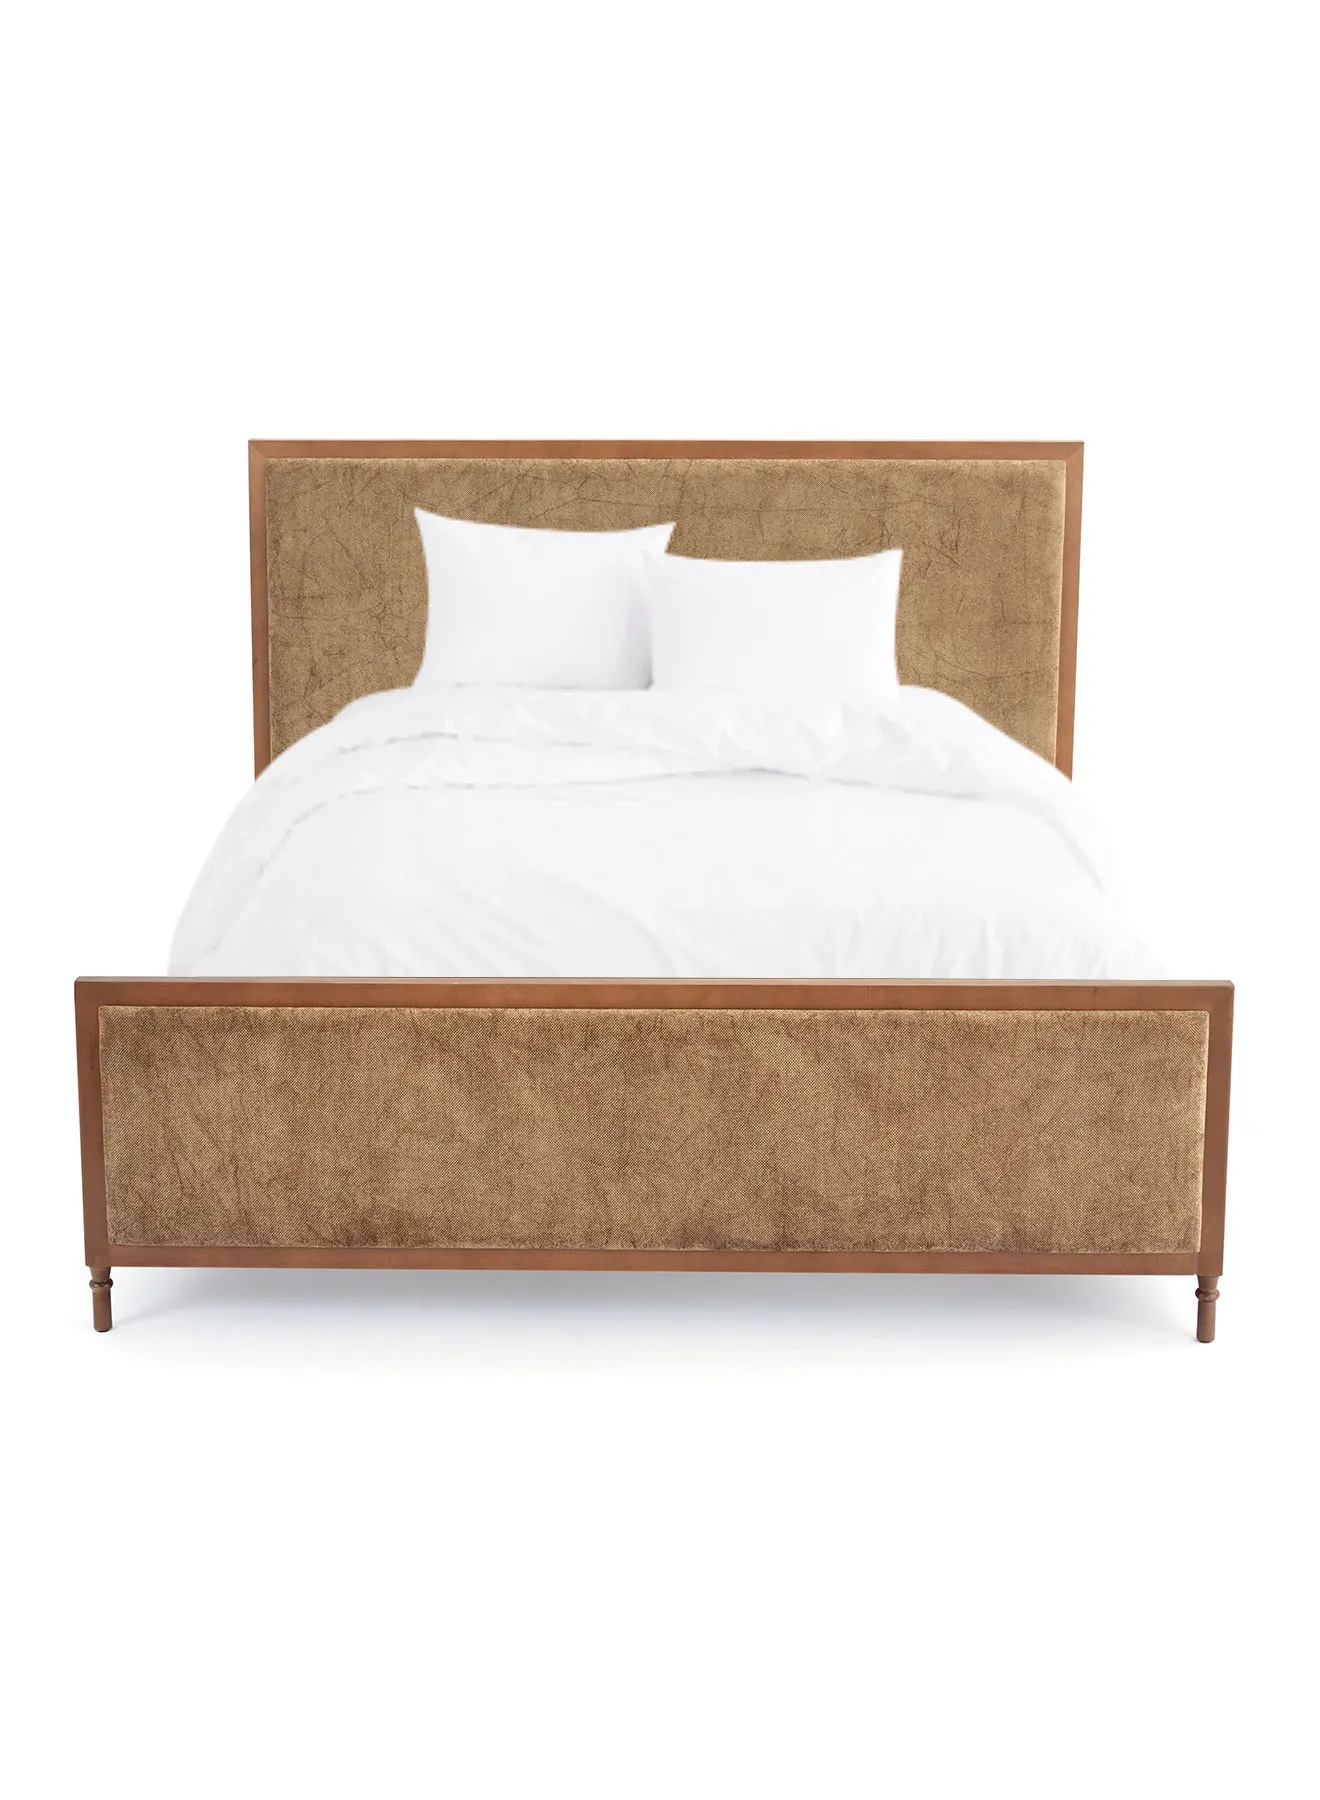 إطار سرير ebb & flow فاخر - سرير بحجم كوين - مجموعة مسمار أنيقة - لون بني - الحجم 1860 × 2080 × 1300 مم - منزل فاخر